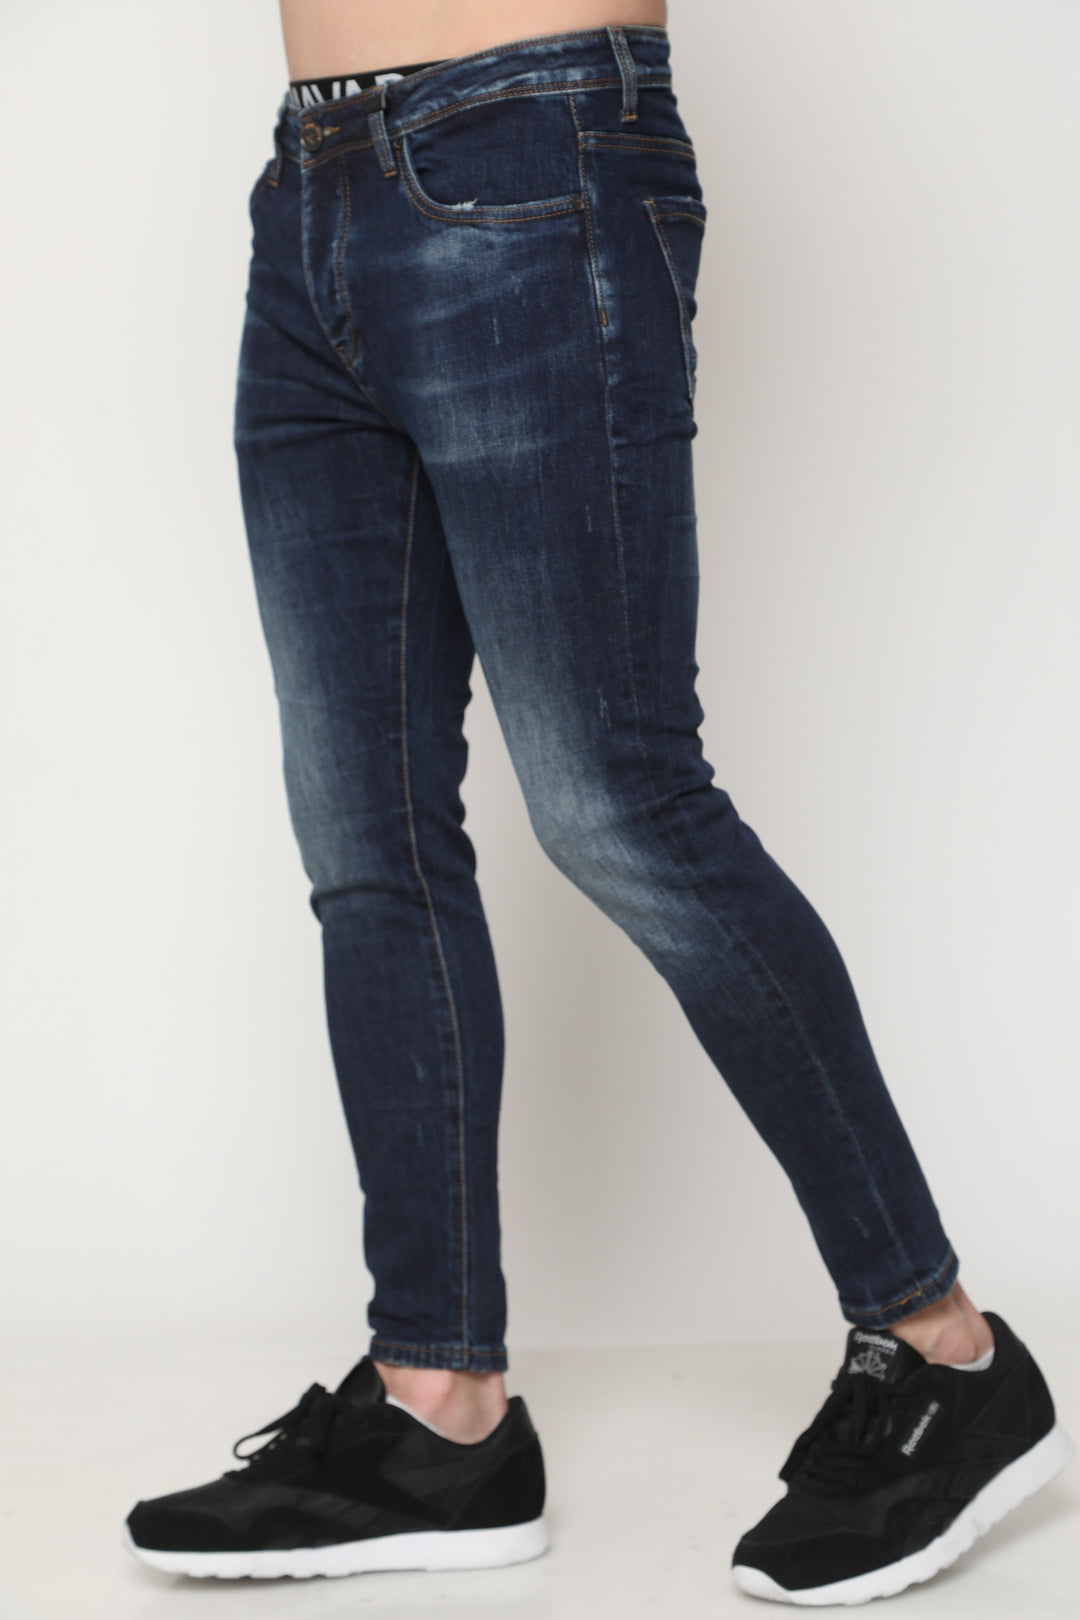 745 ג'ינס סופר סקיני - canavaro jeans